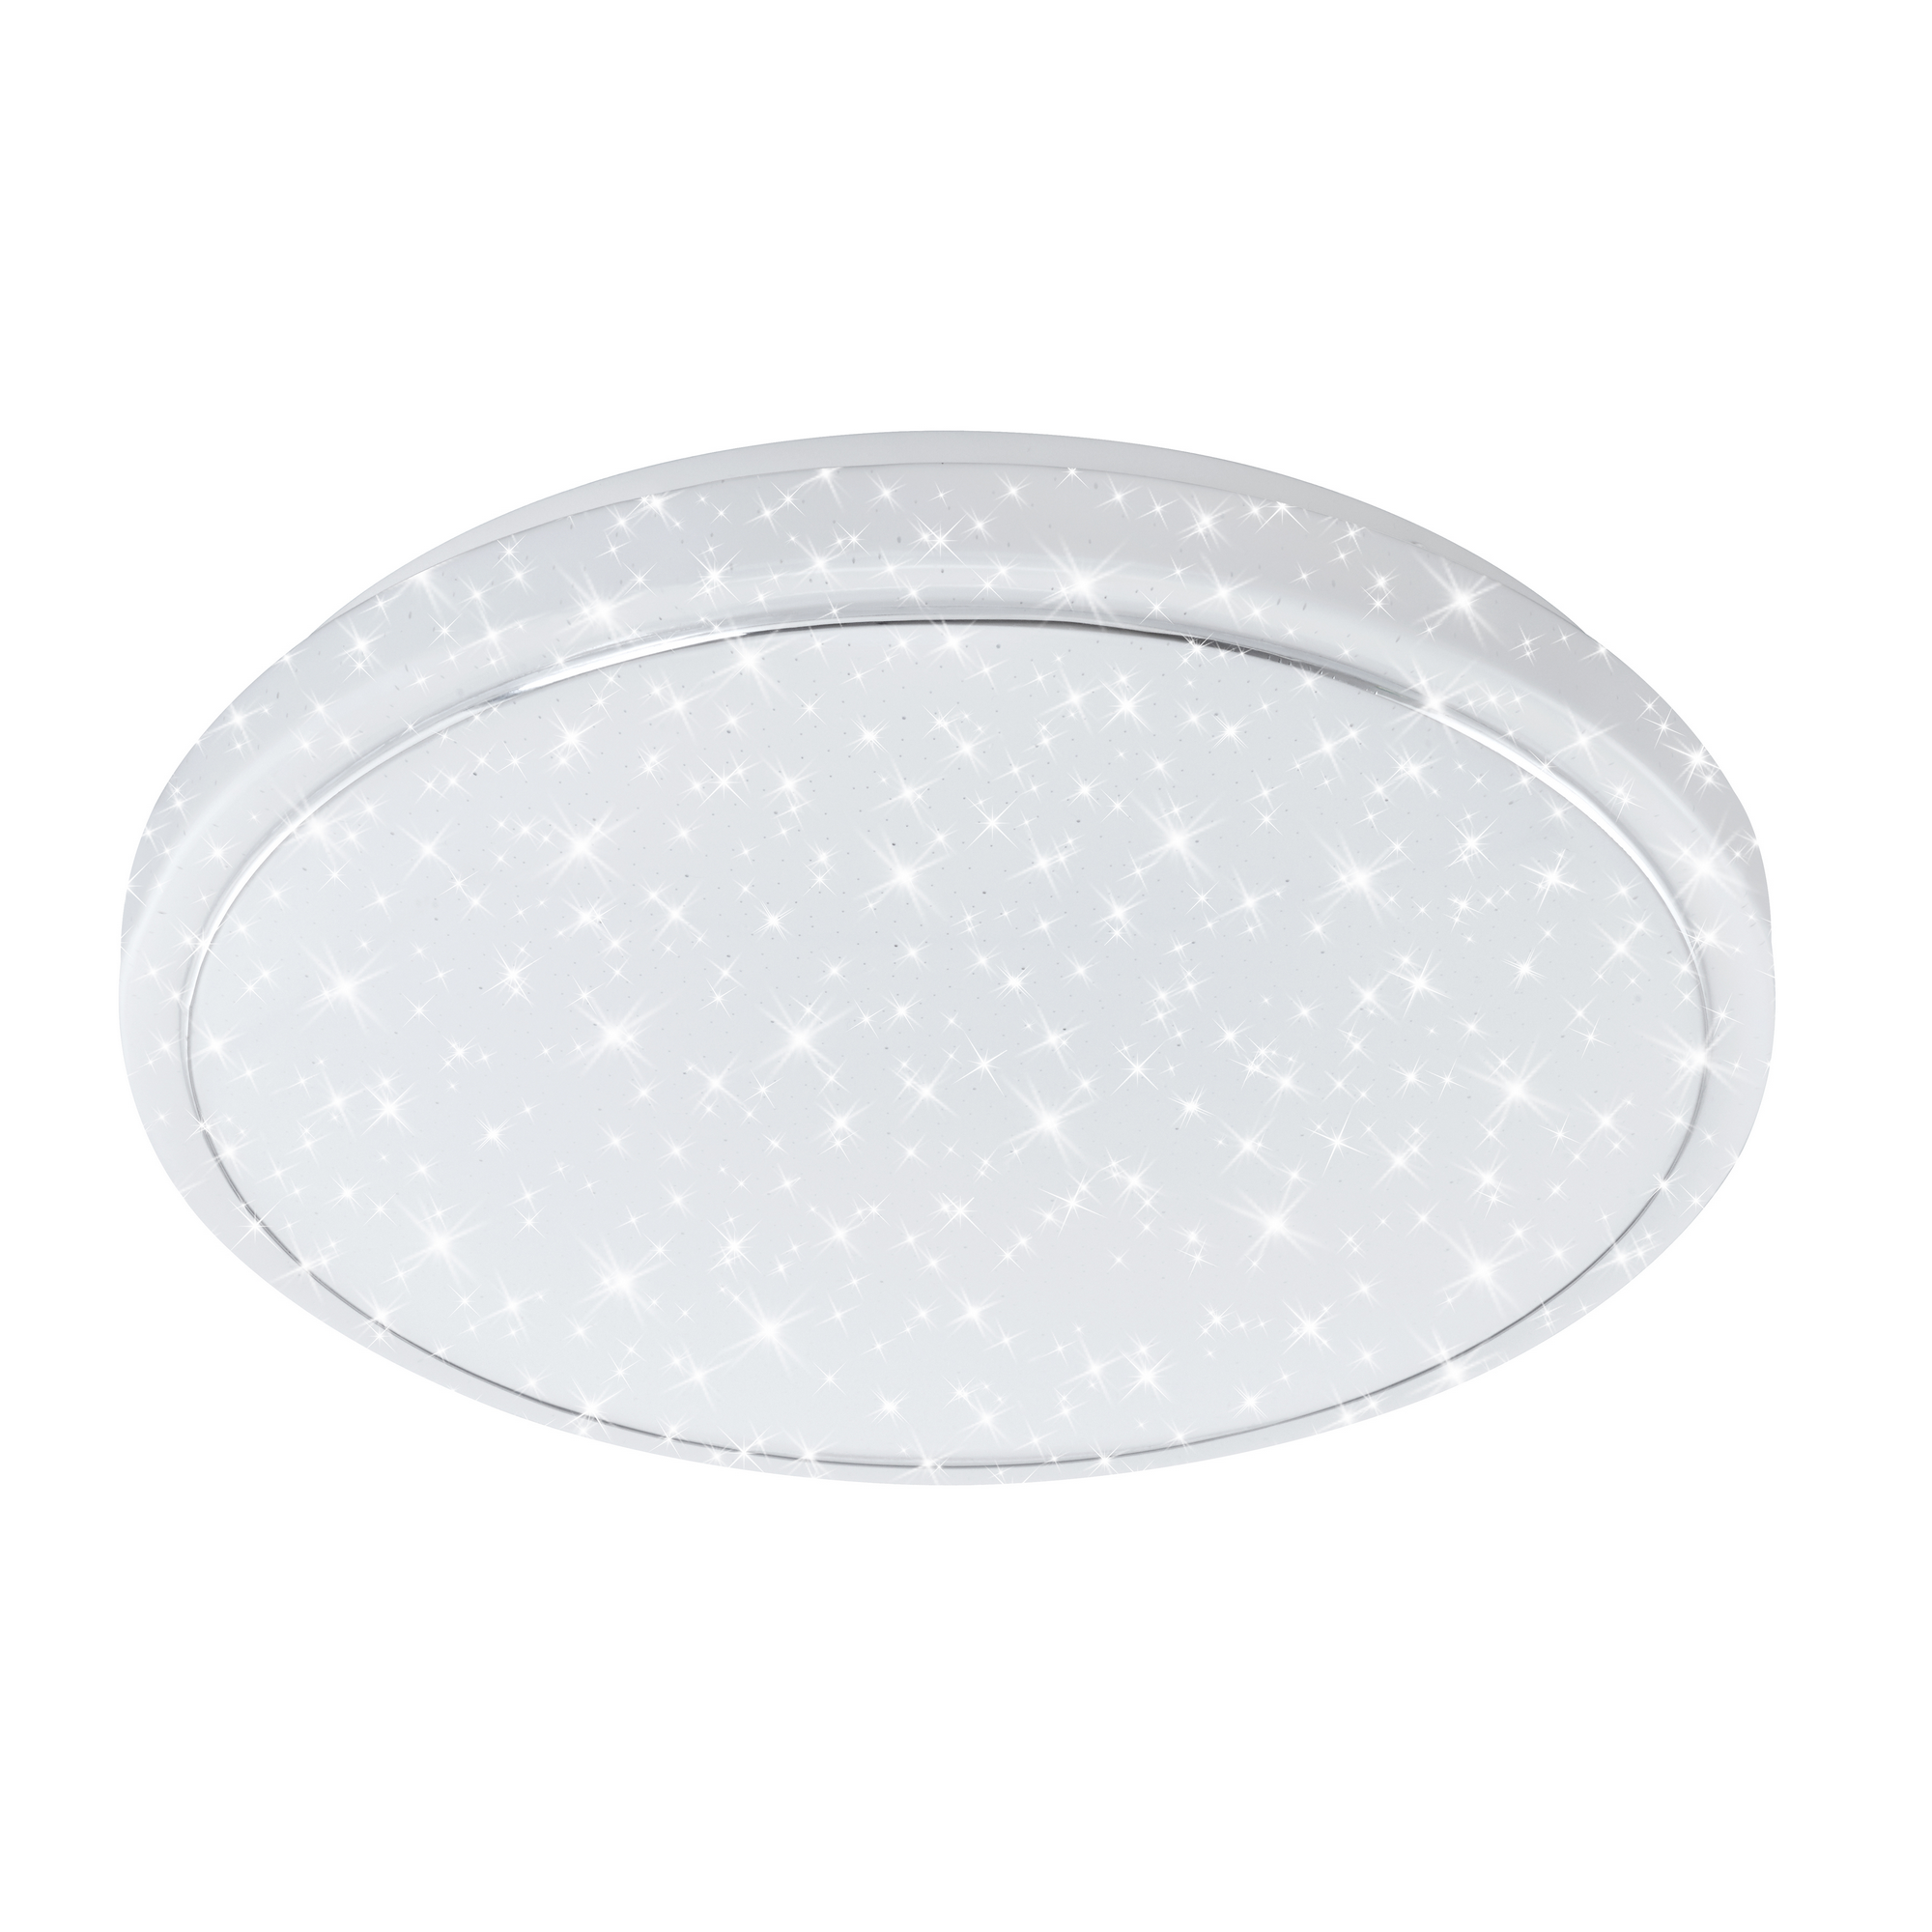 LED-Deckenleuchte 'Star' weiß Ø 56 x 10 cm 4000 lm, mit Nachtlichtfunktion + product picture